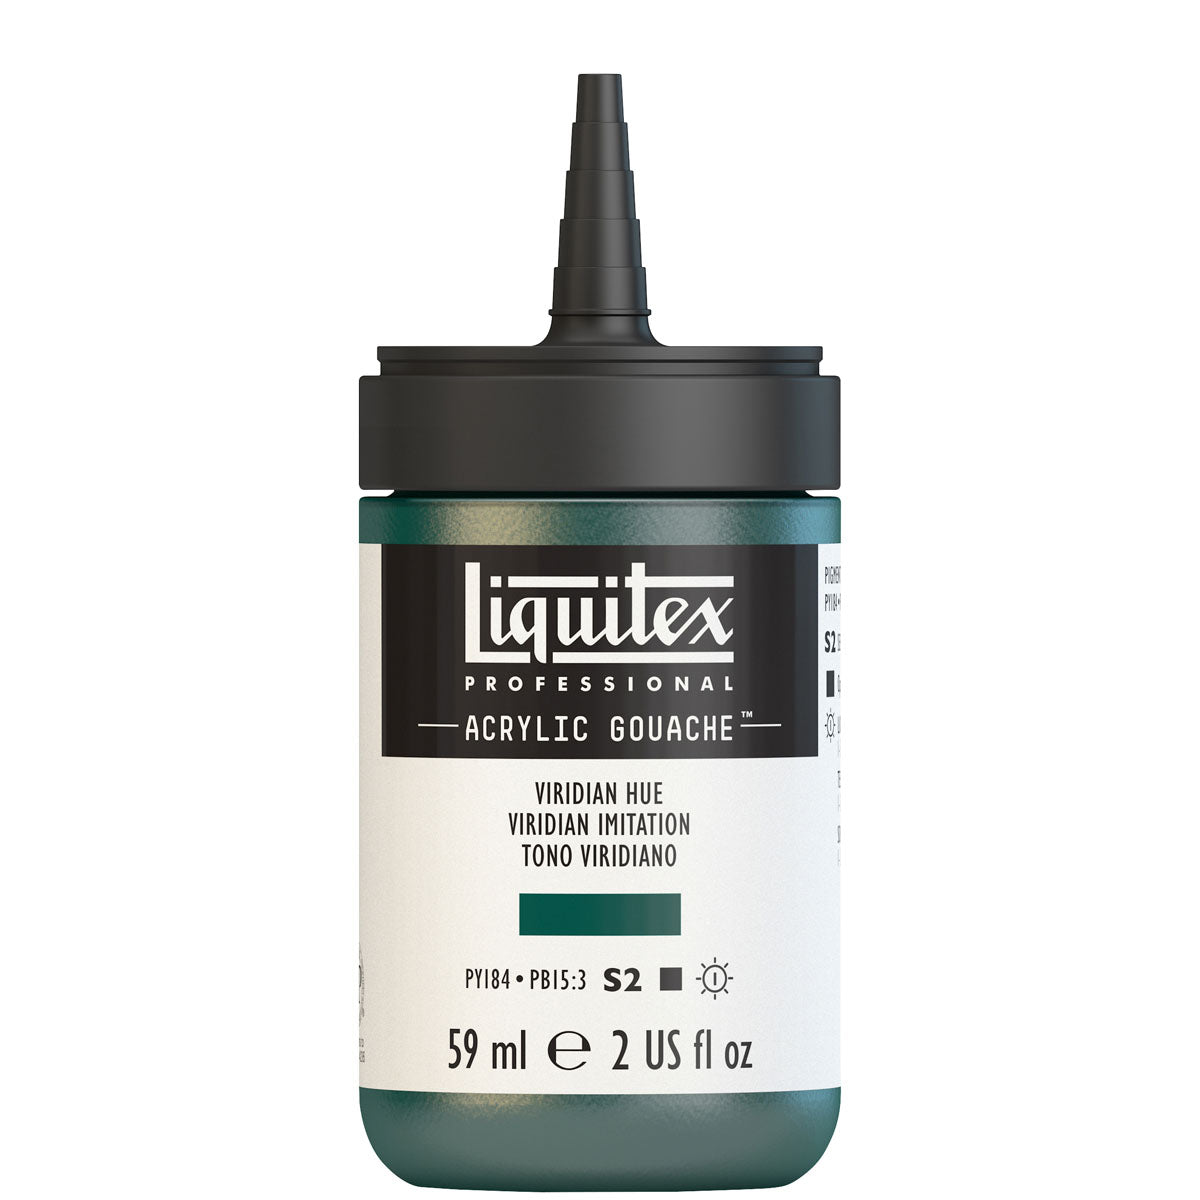 Liquitex - Acrylic Gouache 59ml S2 - Viridian Hue